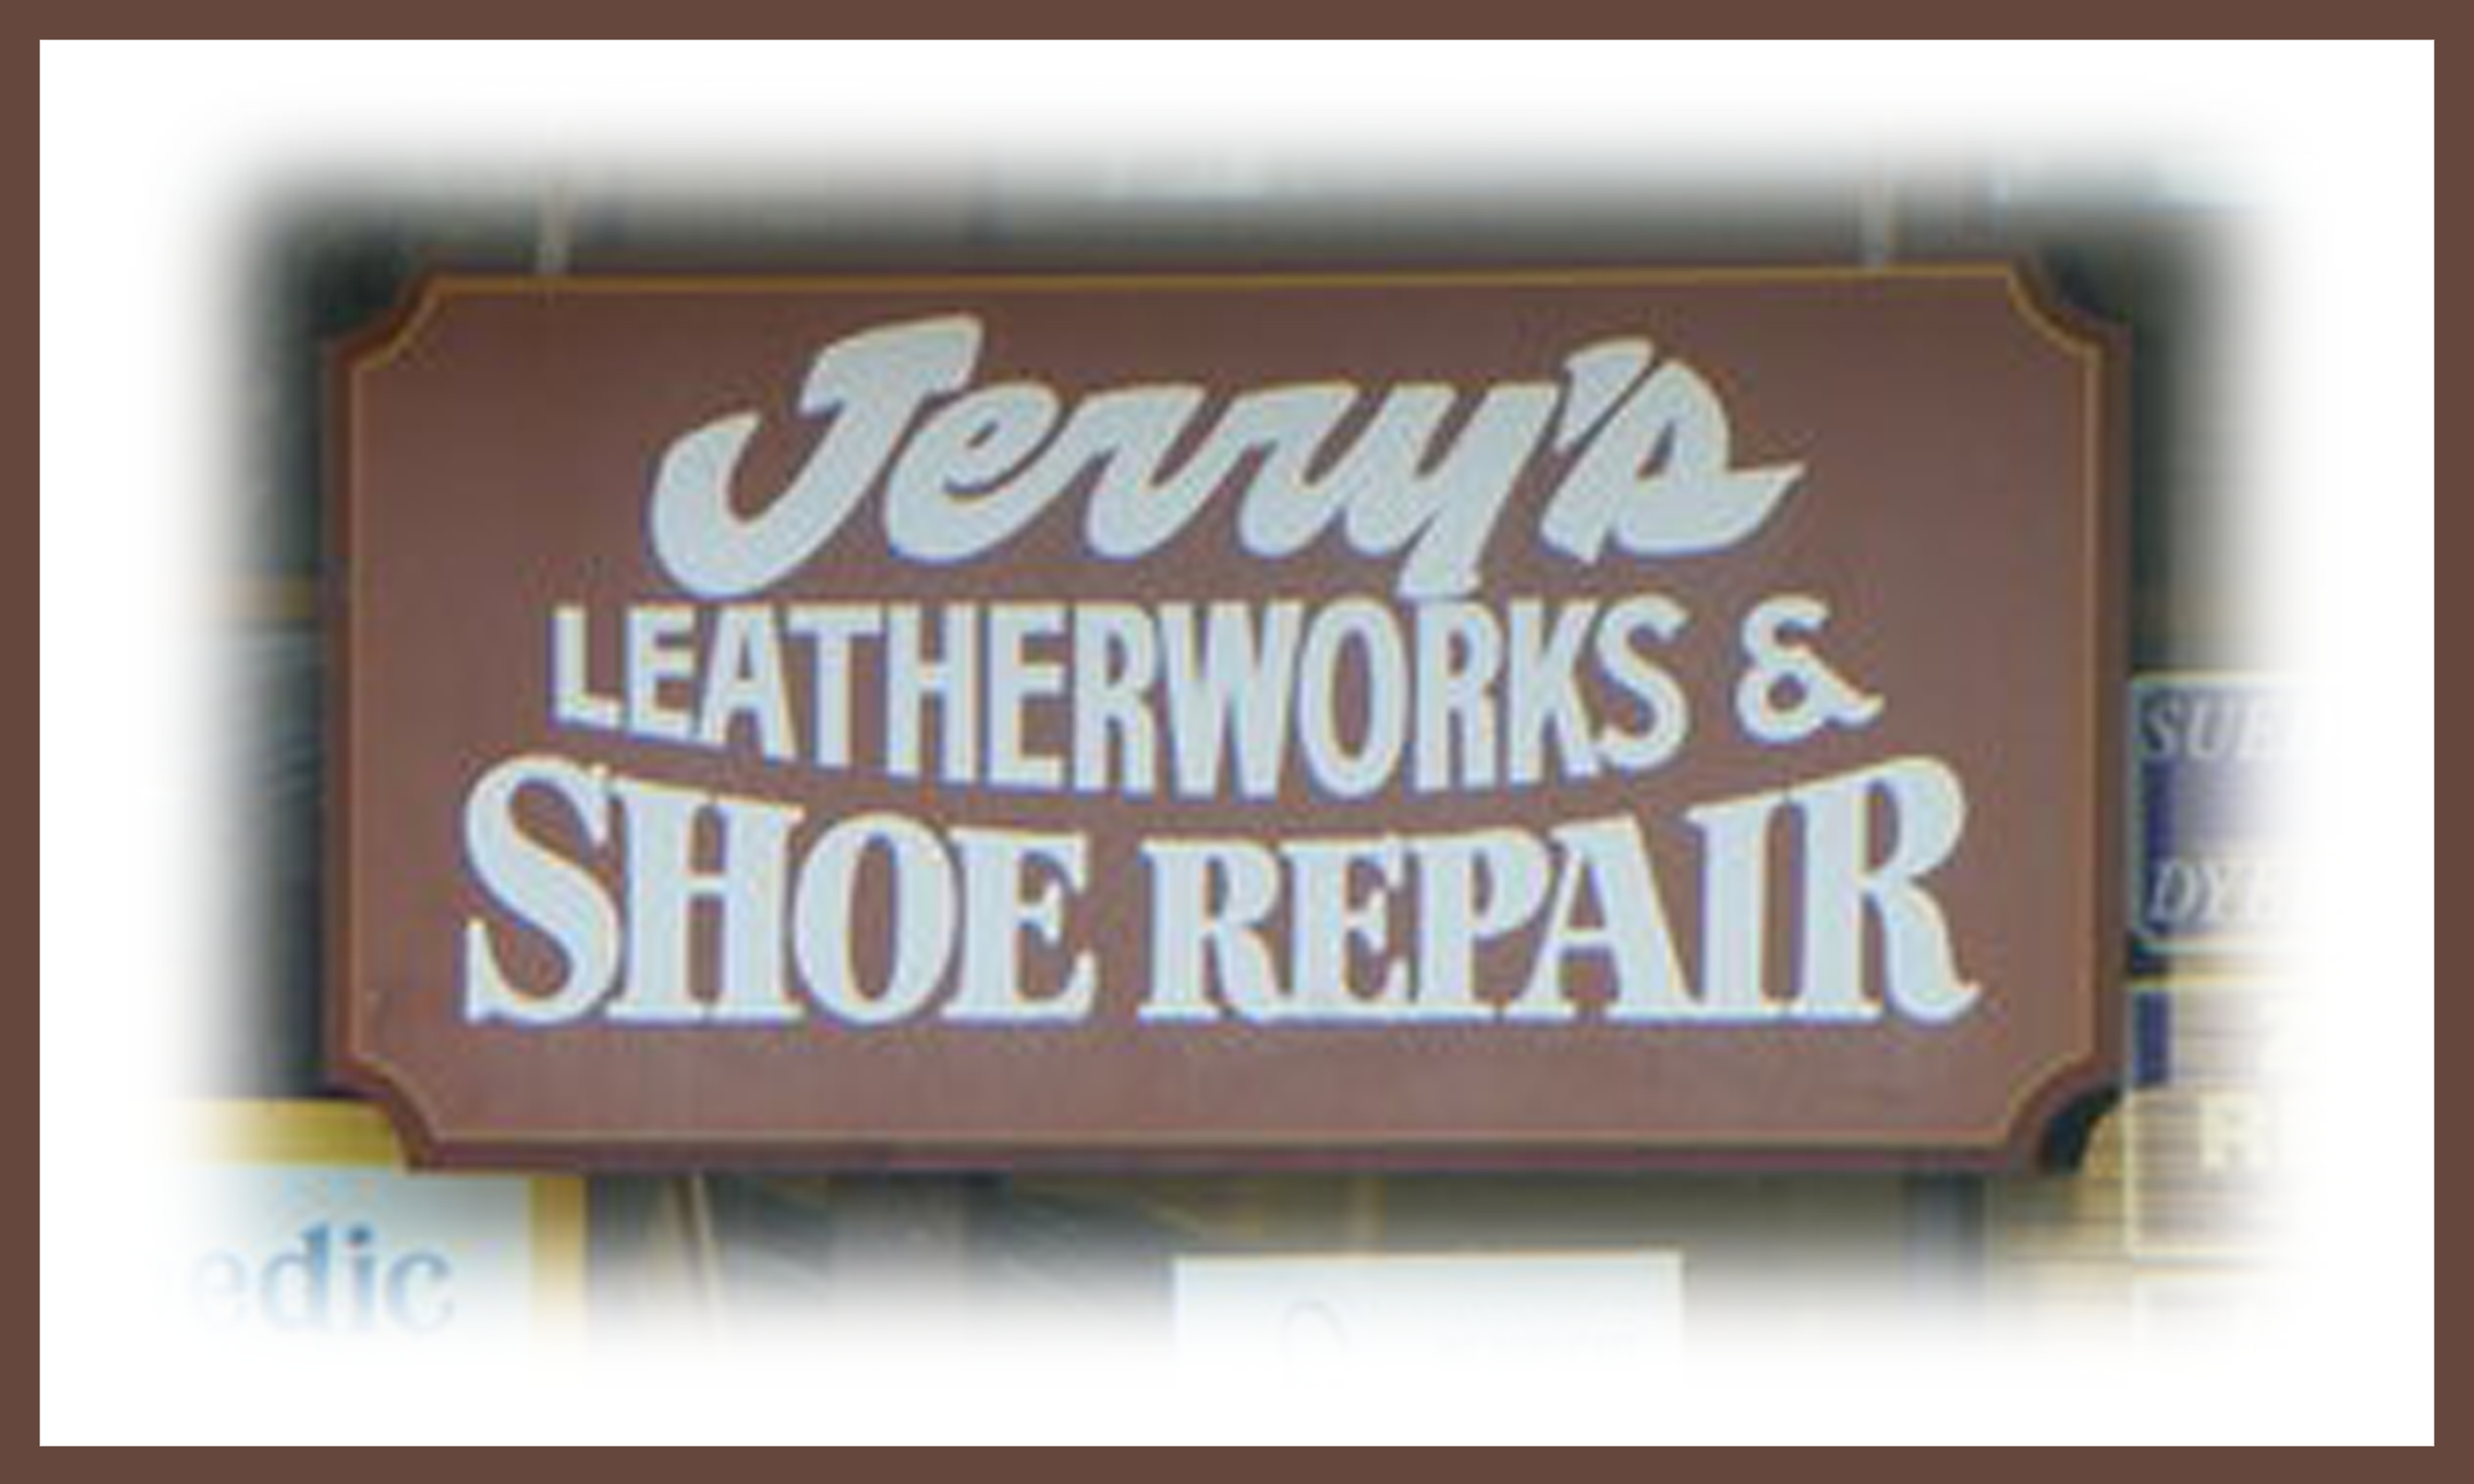 Jerry's Shoe Repair